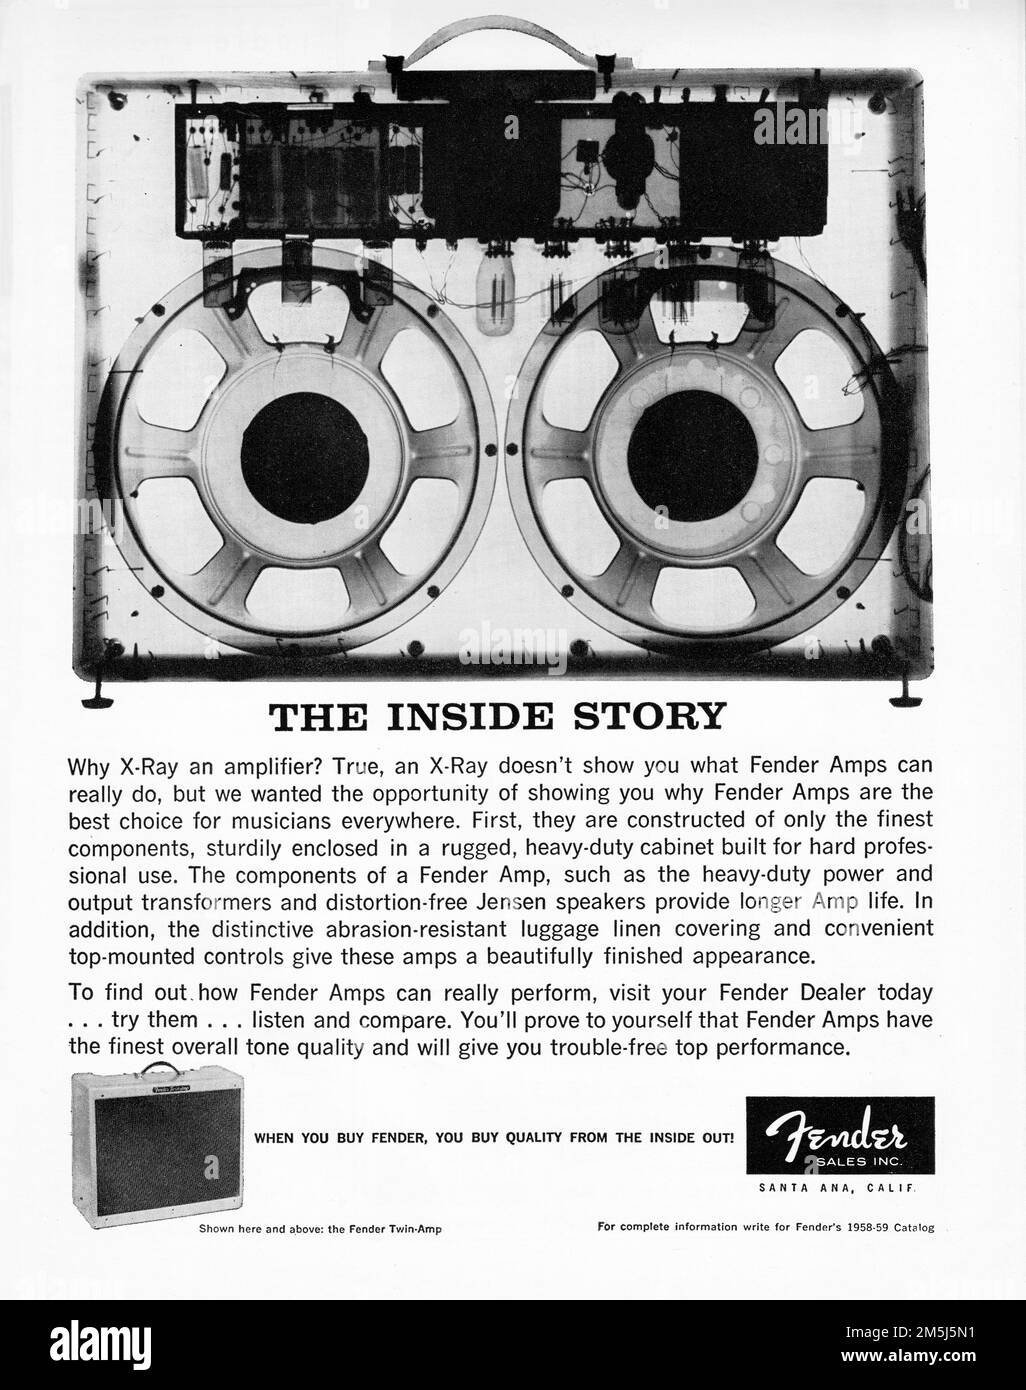 Una pubblicità per gli amplificatori del parafango che mostrano un esray e lodano la loro costruzione di qualità. da un periodico dei primi anni '1960s. Foto Stock